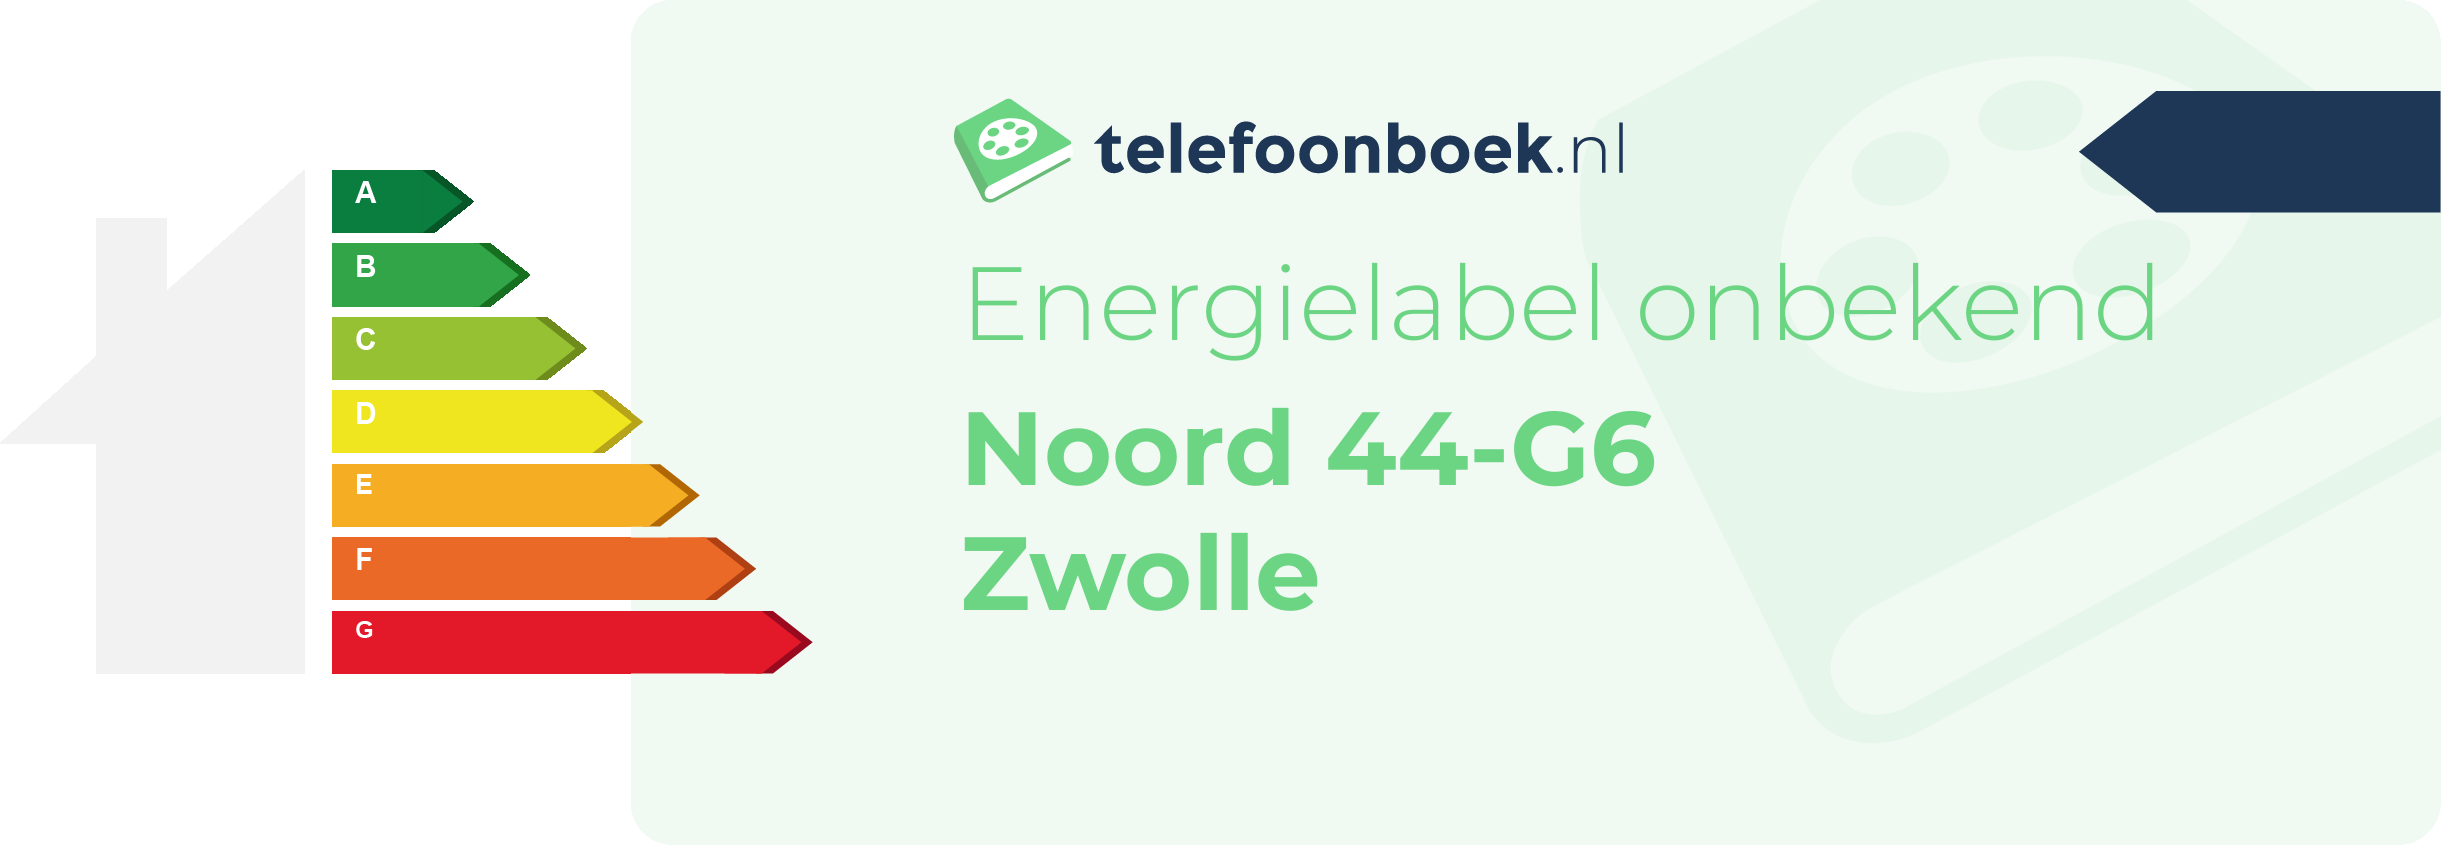 Energielabel Noord 44-G6 Zwolle